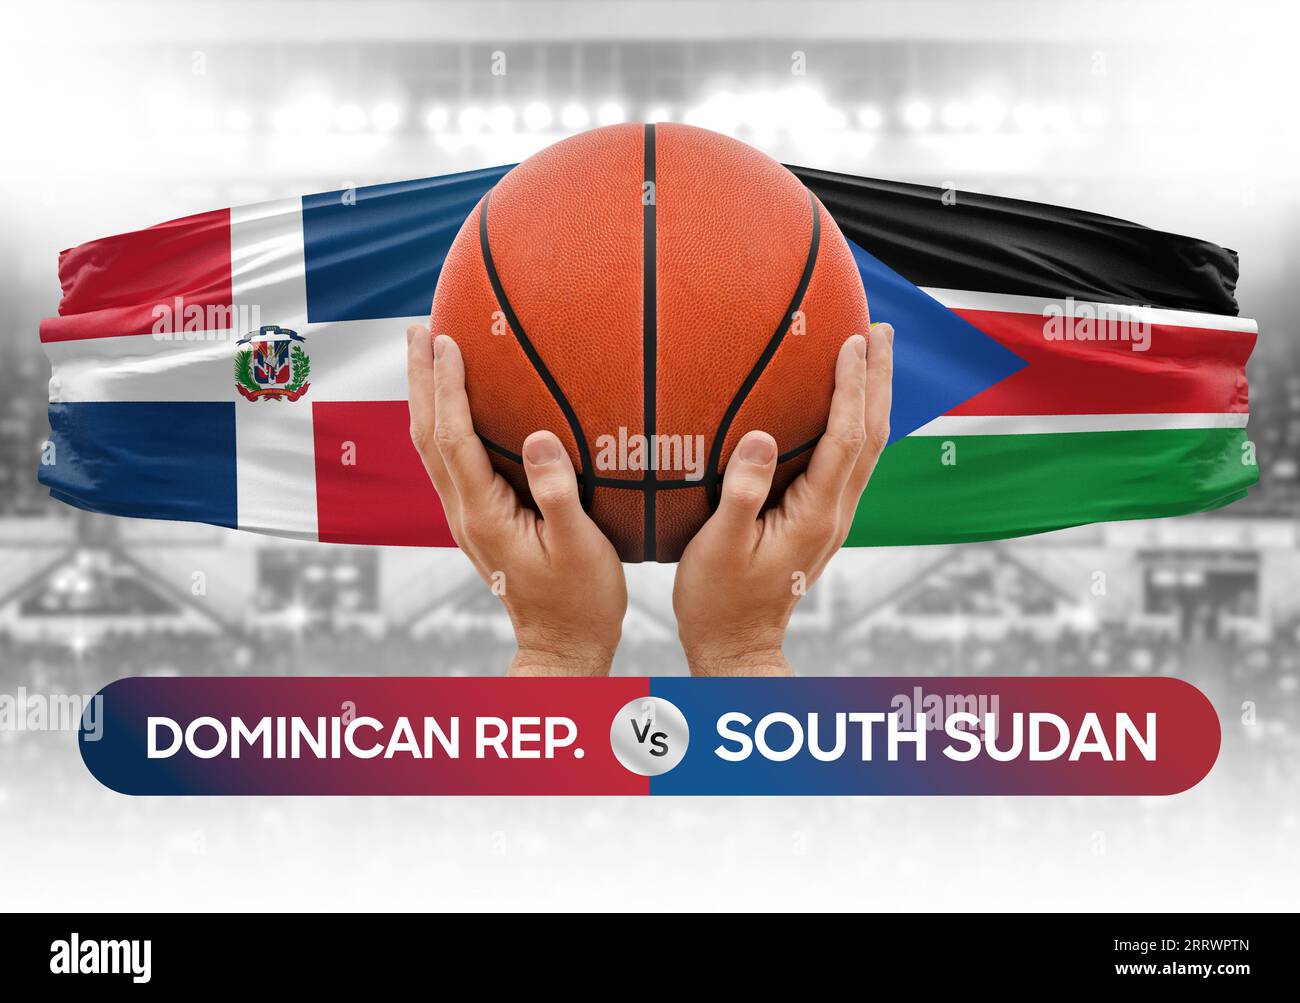 Dominikanische Republik vs Südsudan nationale Basketballmannschaften Basketballspiel Wettbewerb Cup Konzept Bild Stockfoto